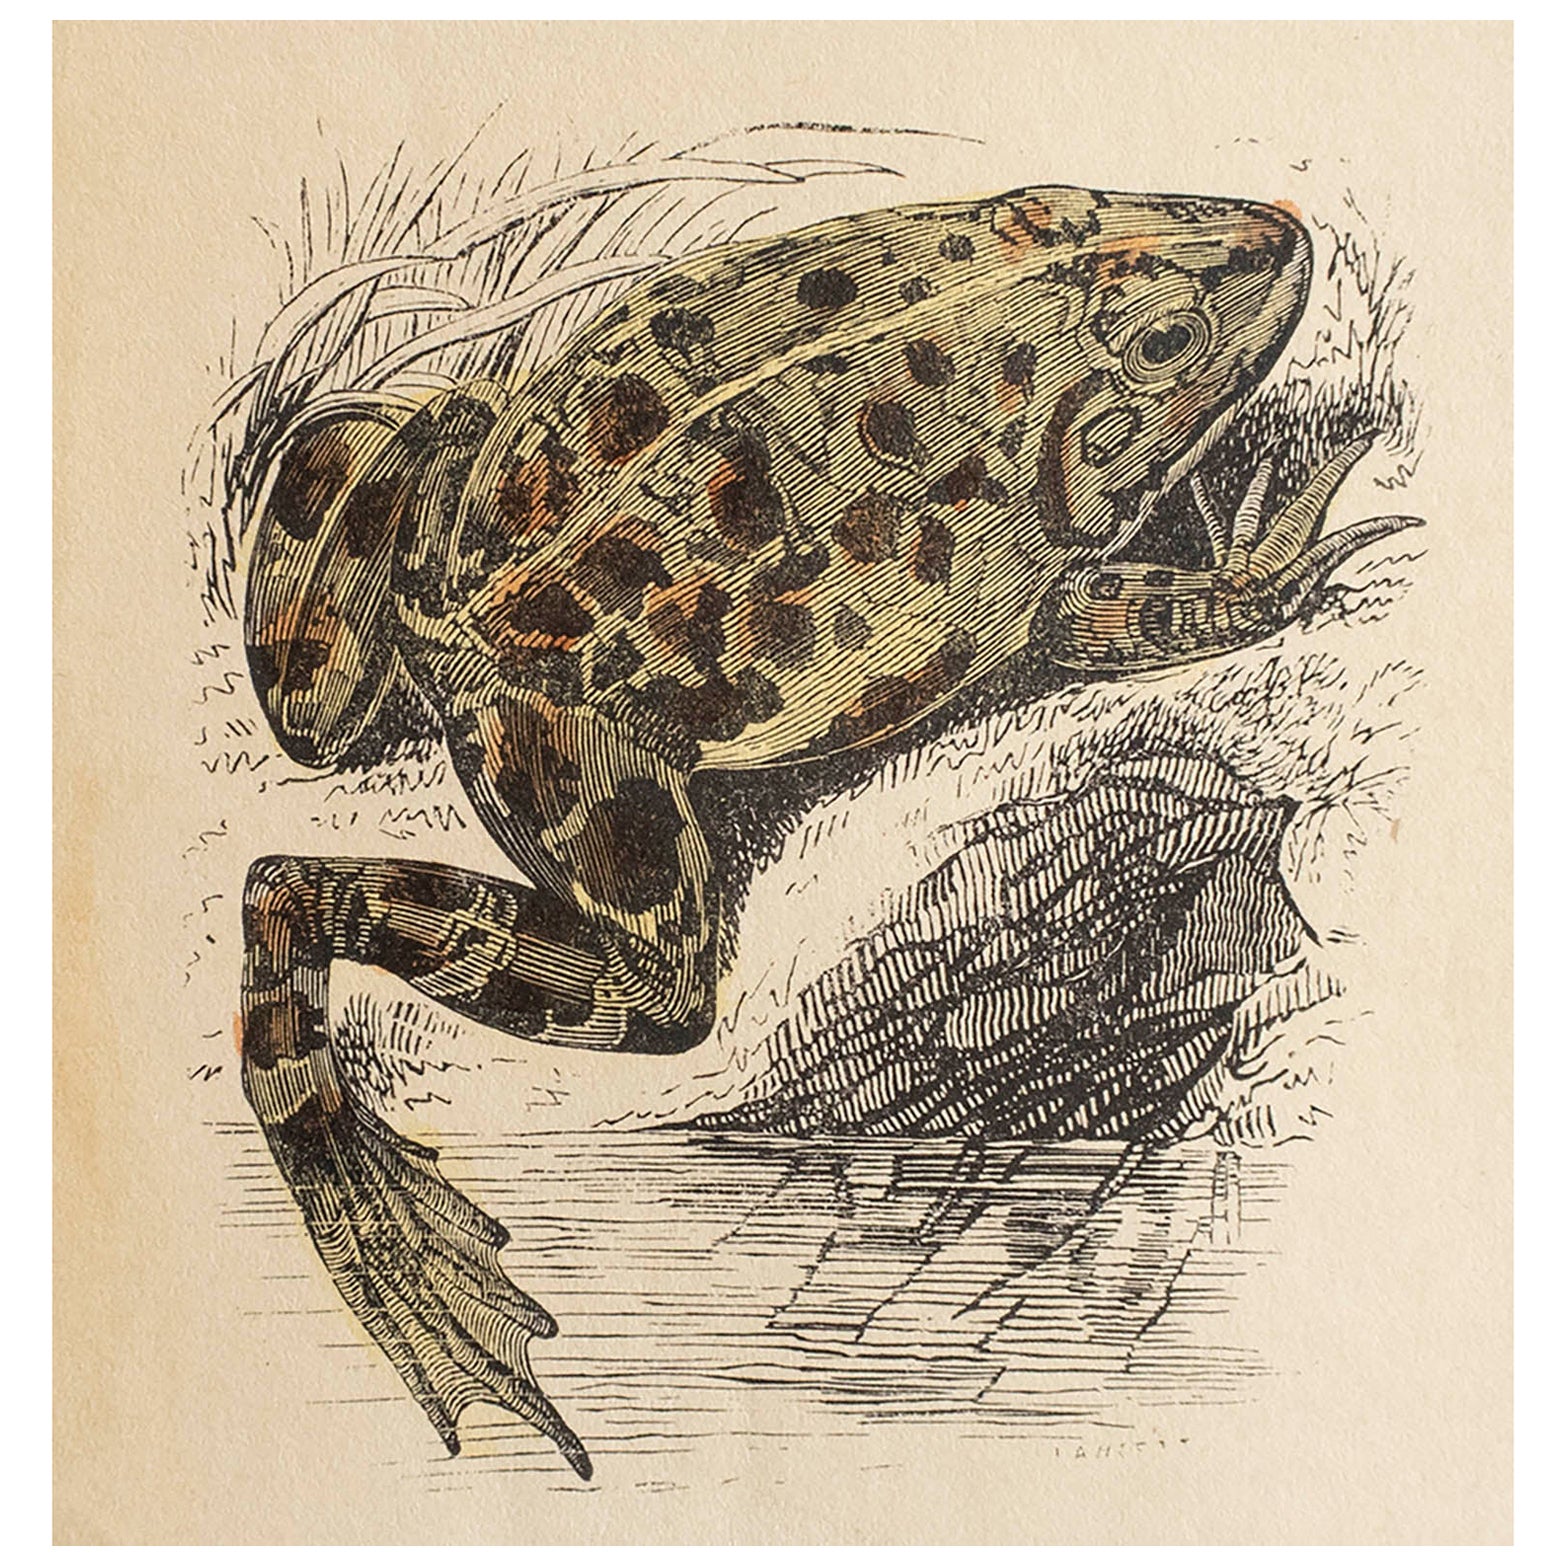  Gravure ancienne originale d'une grenouille, vers 1850